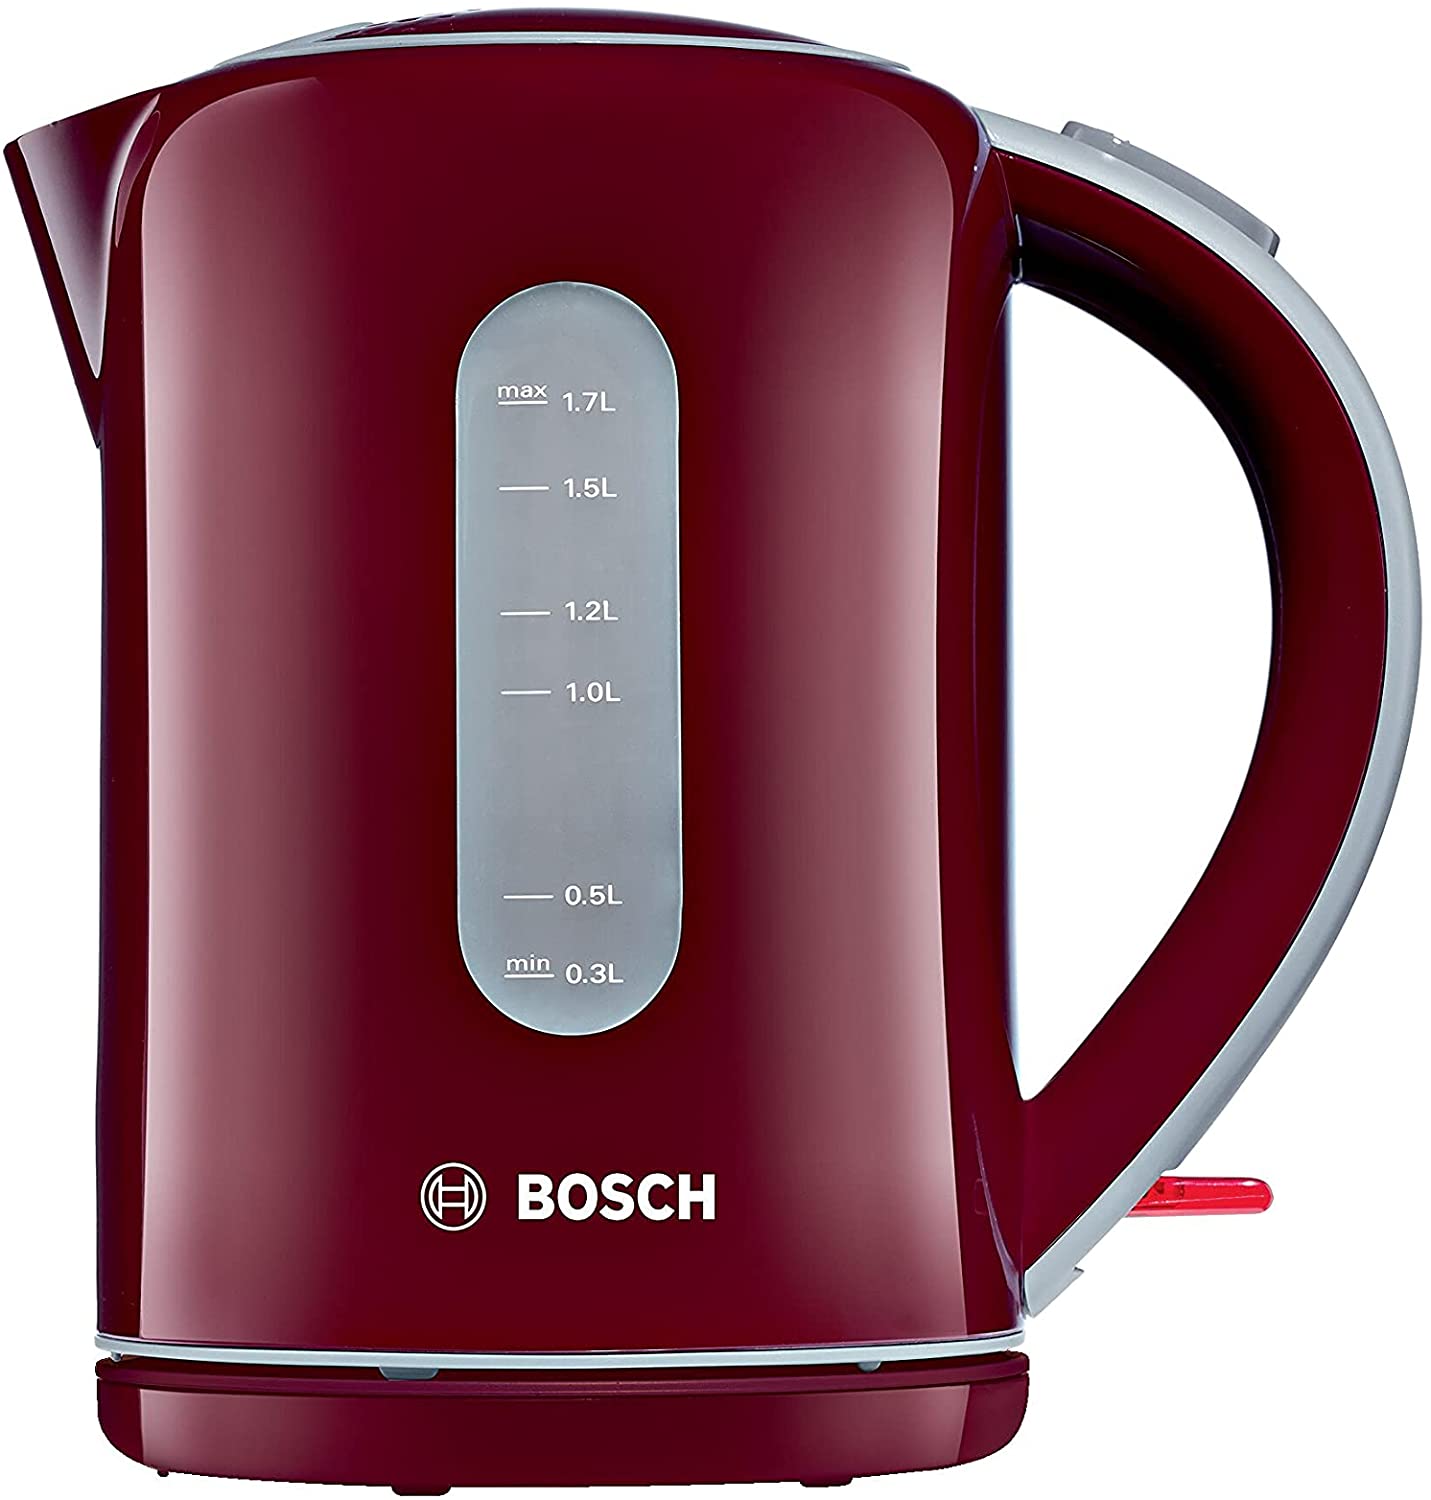 Bosch Kettle Red / Bordeaux 1.7 L 2200 W